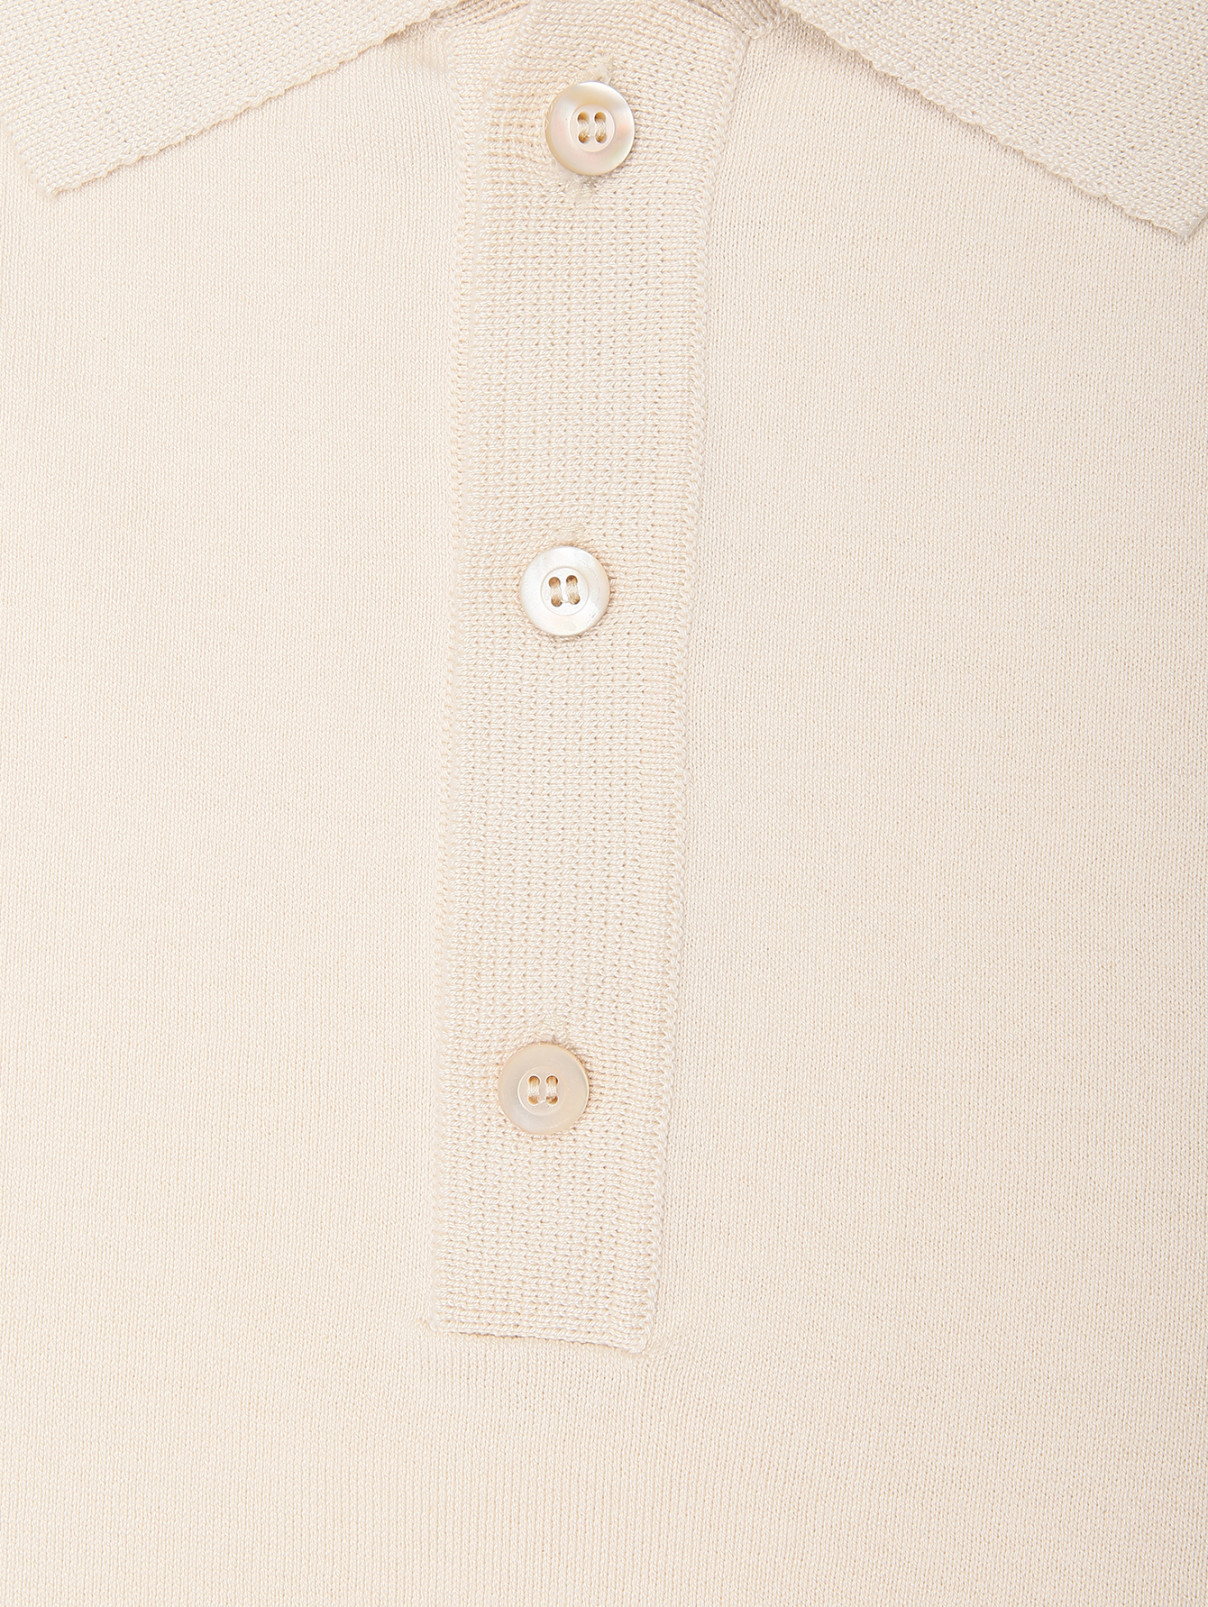 Поло из шелка и хлопка с короткими рукавами Piacenza Cashmere  –  Деталь  – Цвет:  Бежевый